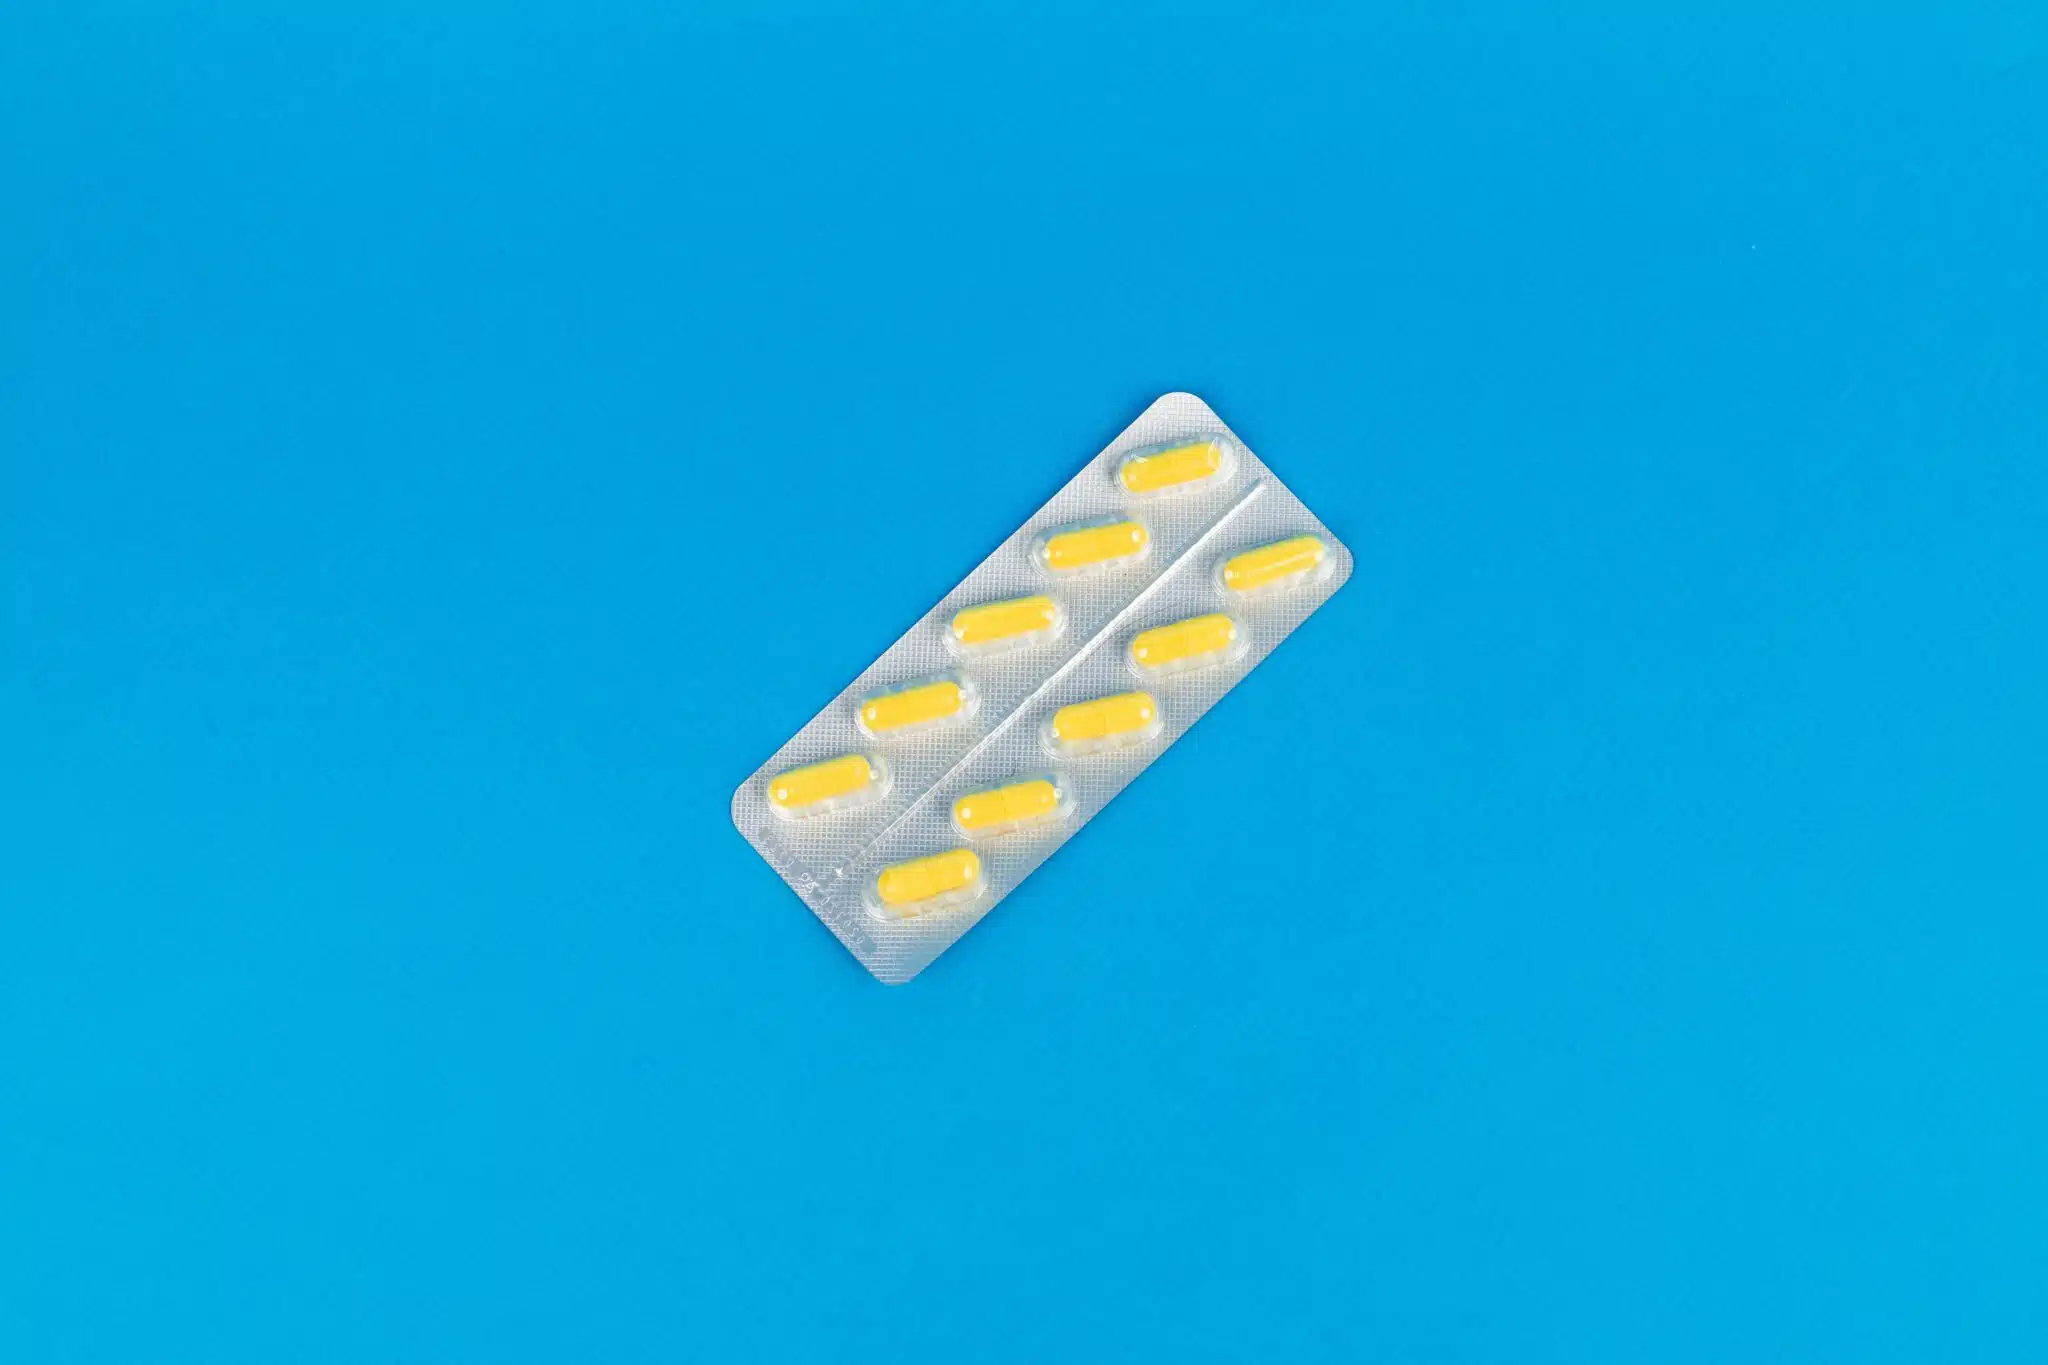 Anticonvulsants medication